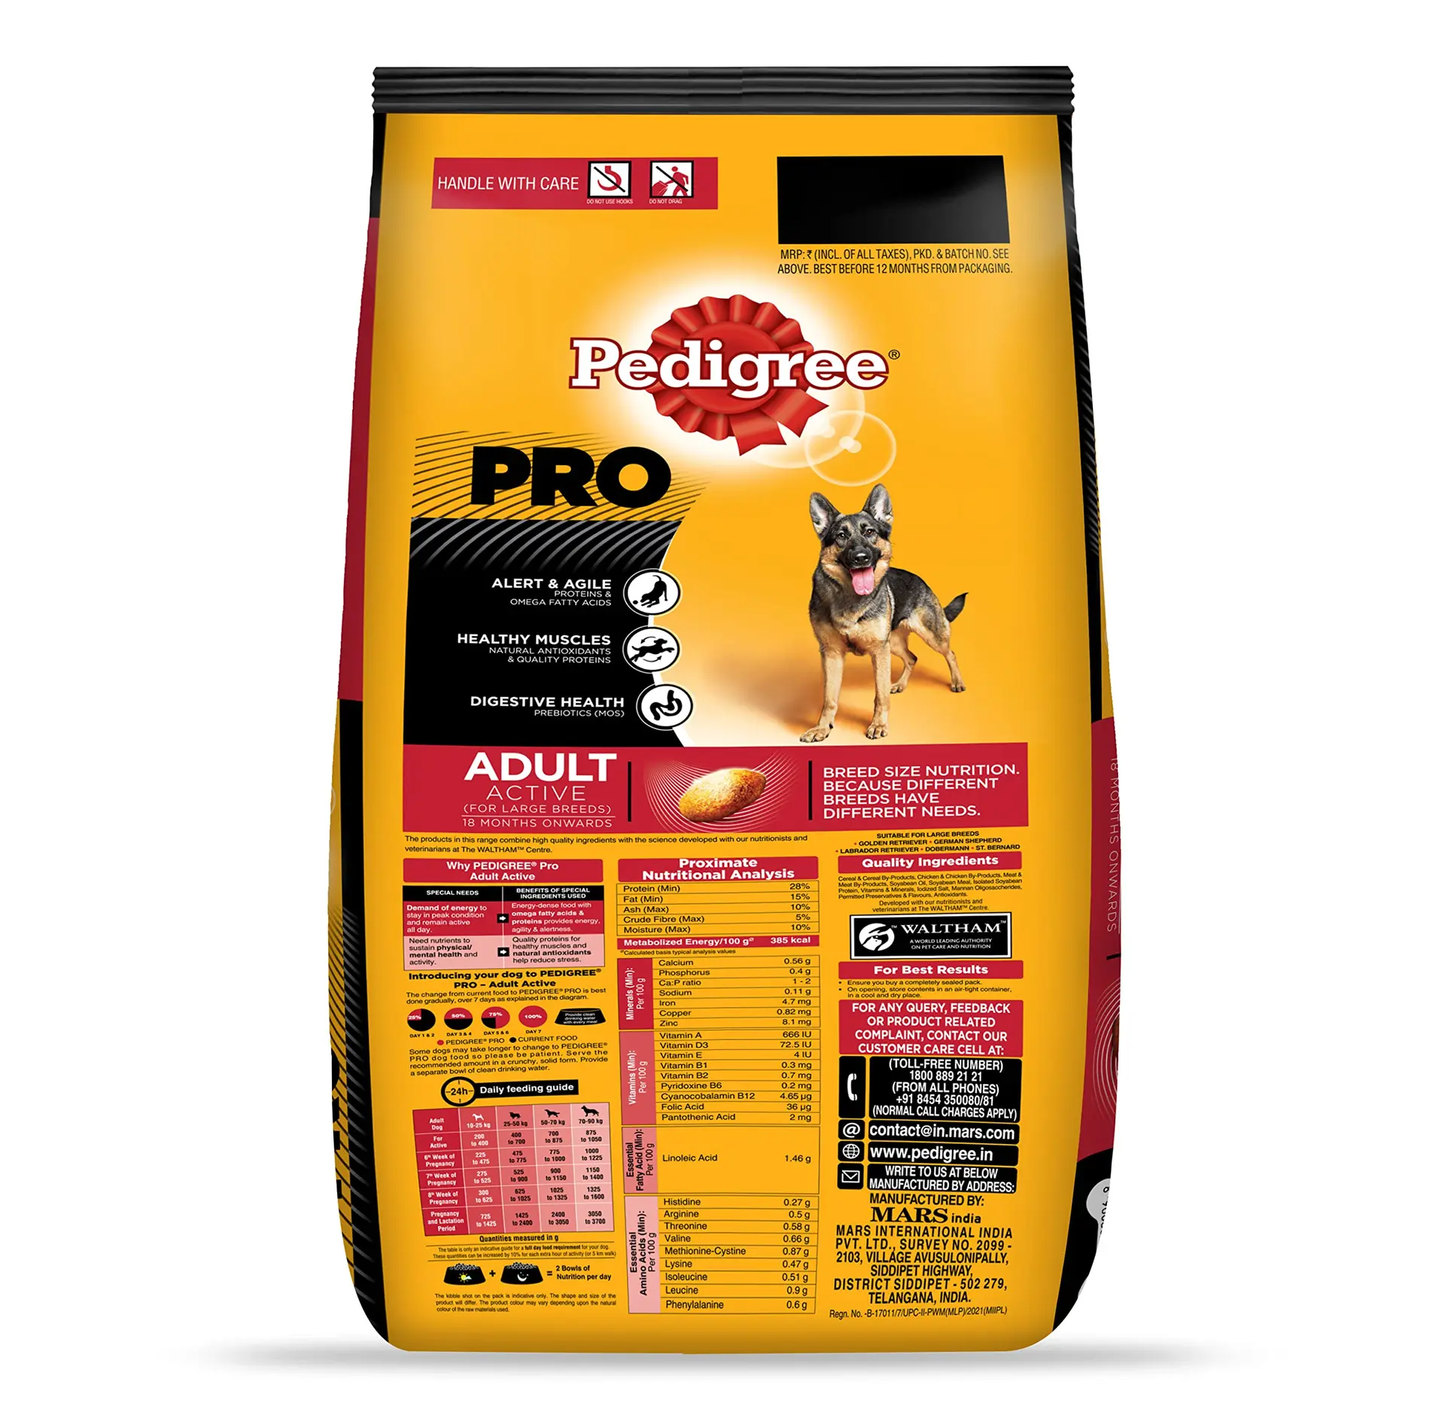 Pedigree Pro Expert Nutrition Active Adult Dry Dog Food, 20 kg Pack